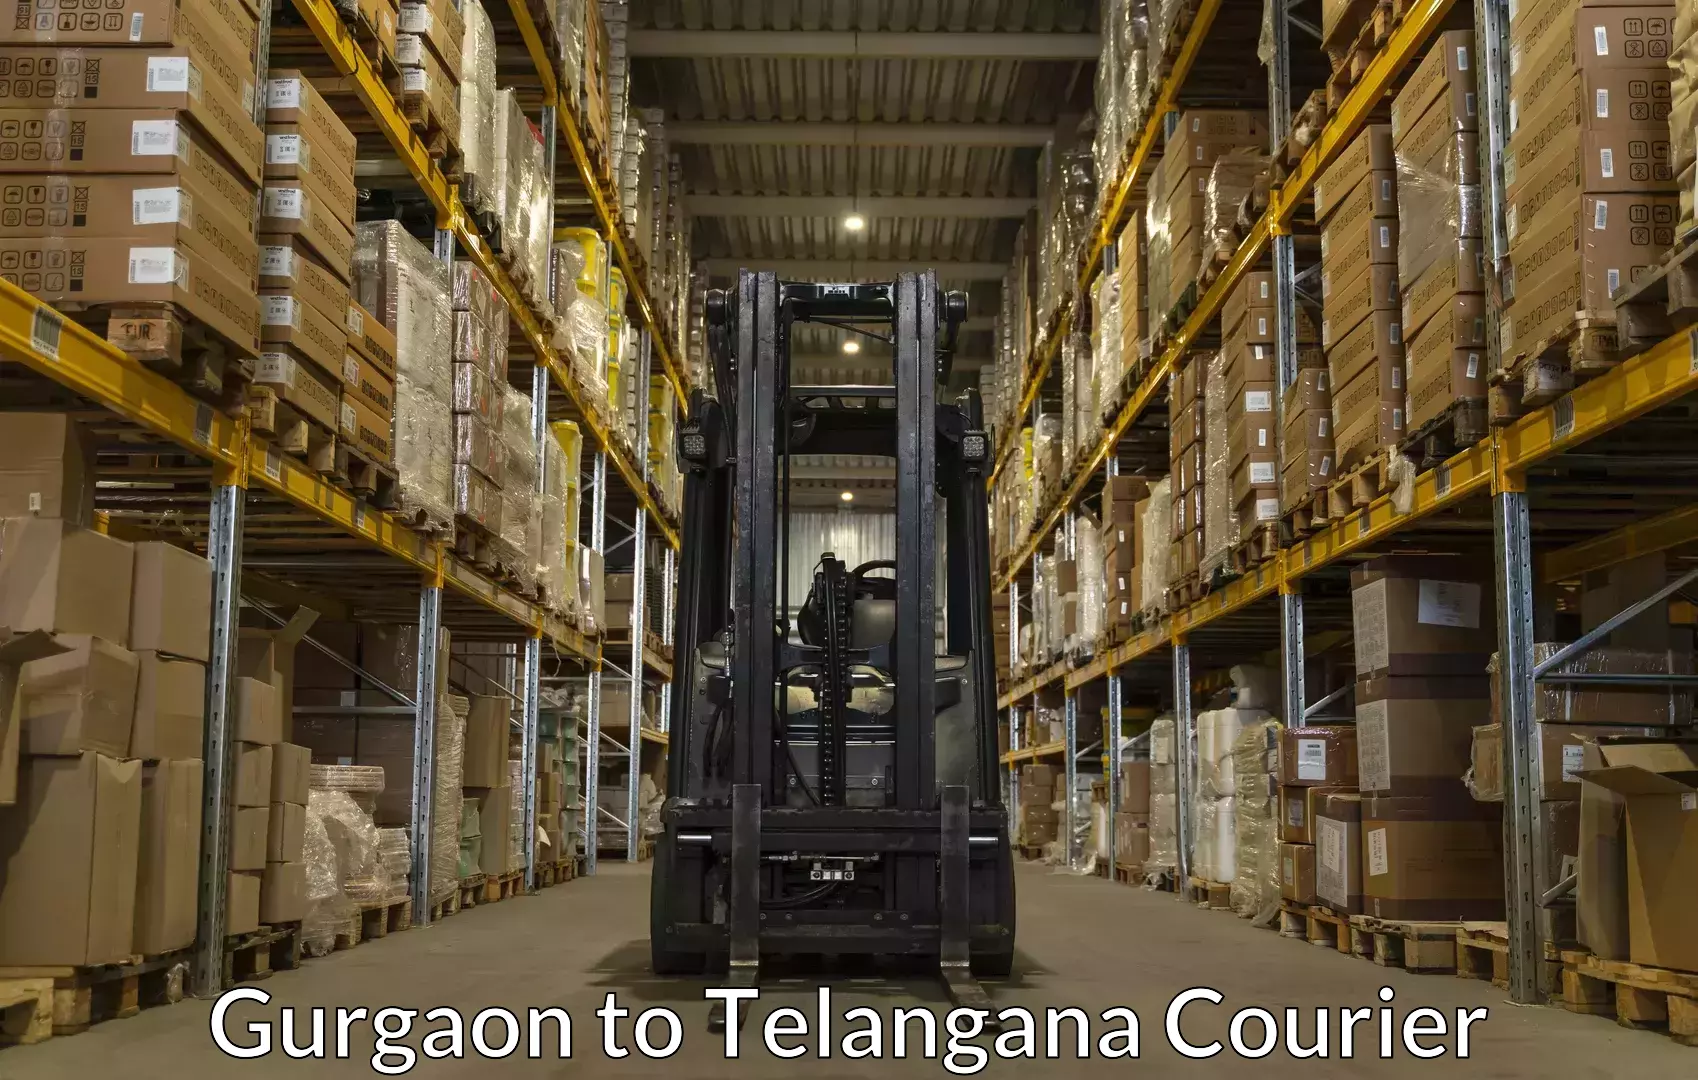 Baggage shipping experts Gurgaon to Telangana